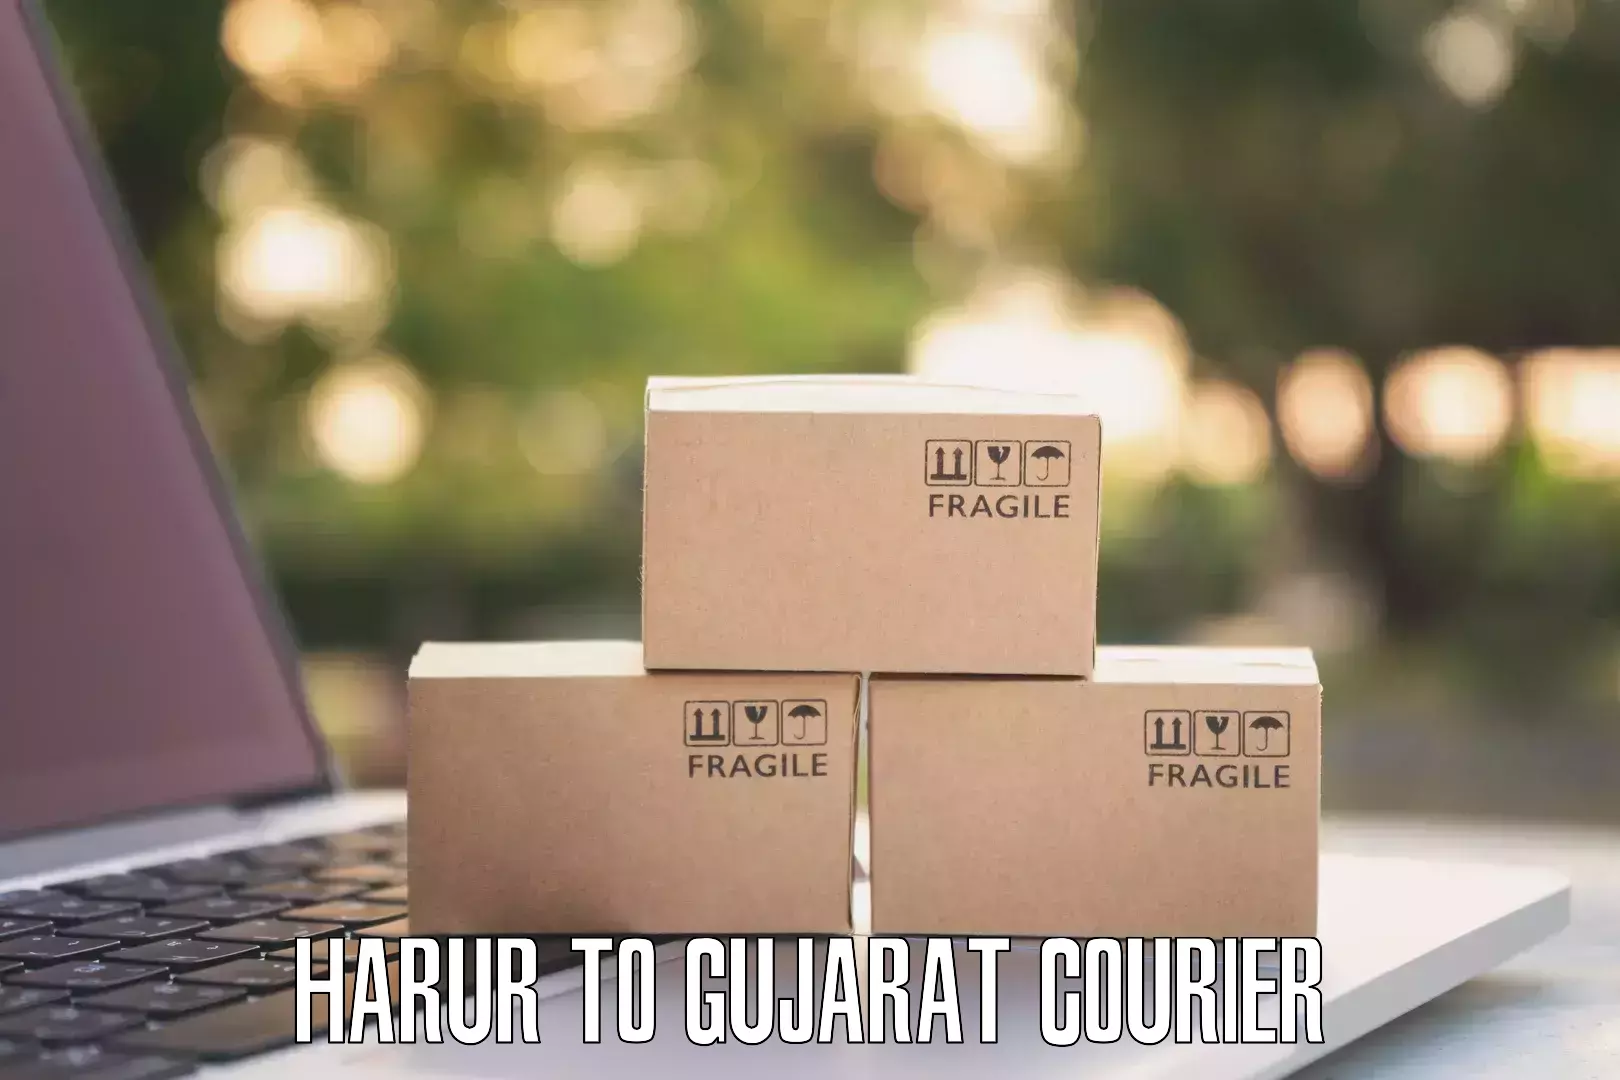 Courier membership in Harur to IIIT Vadodara